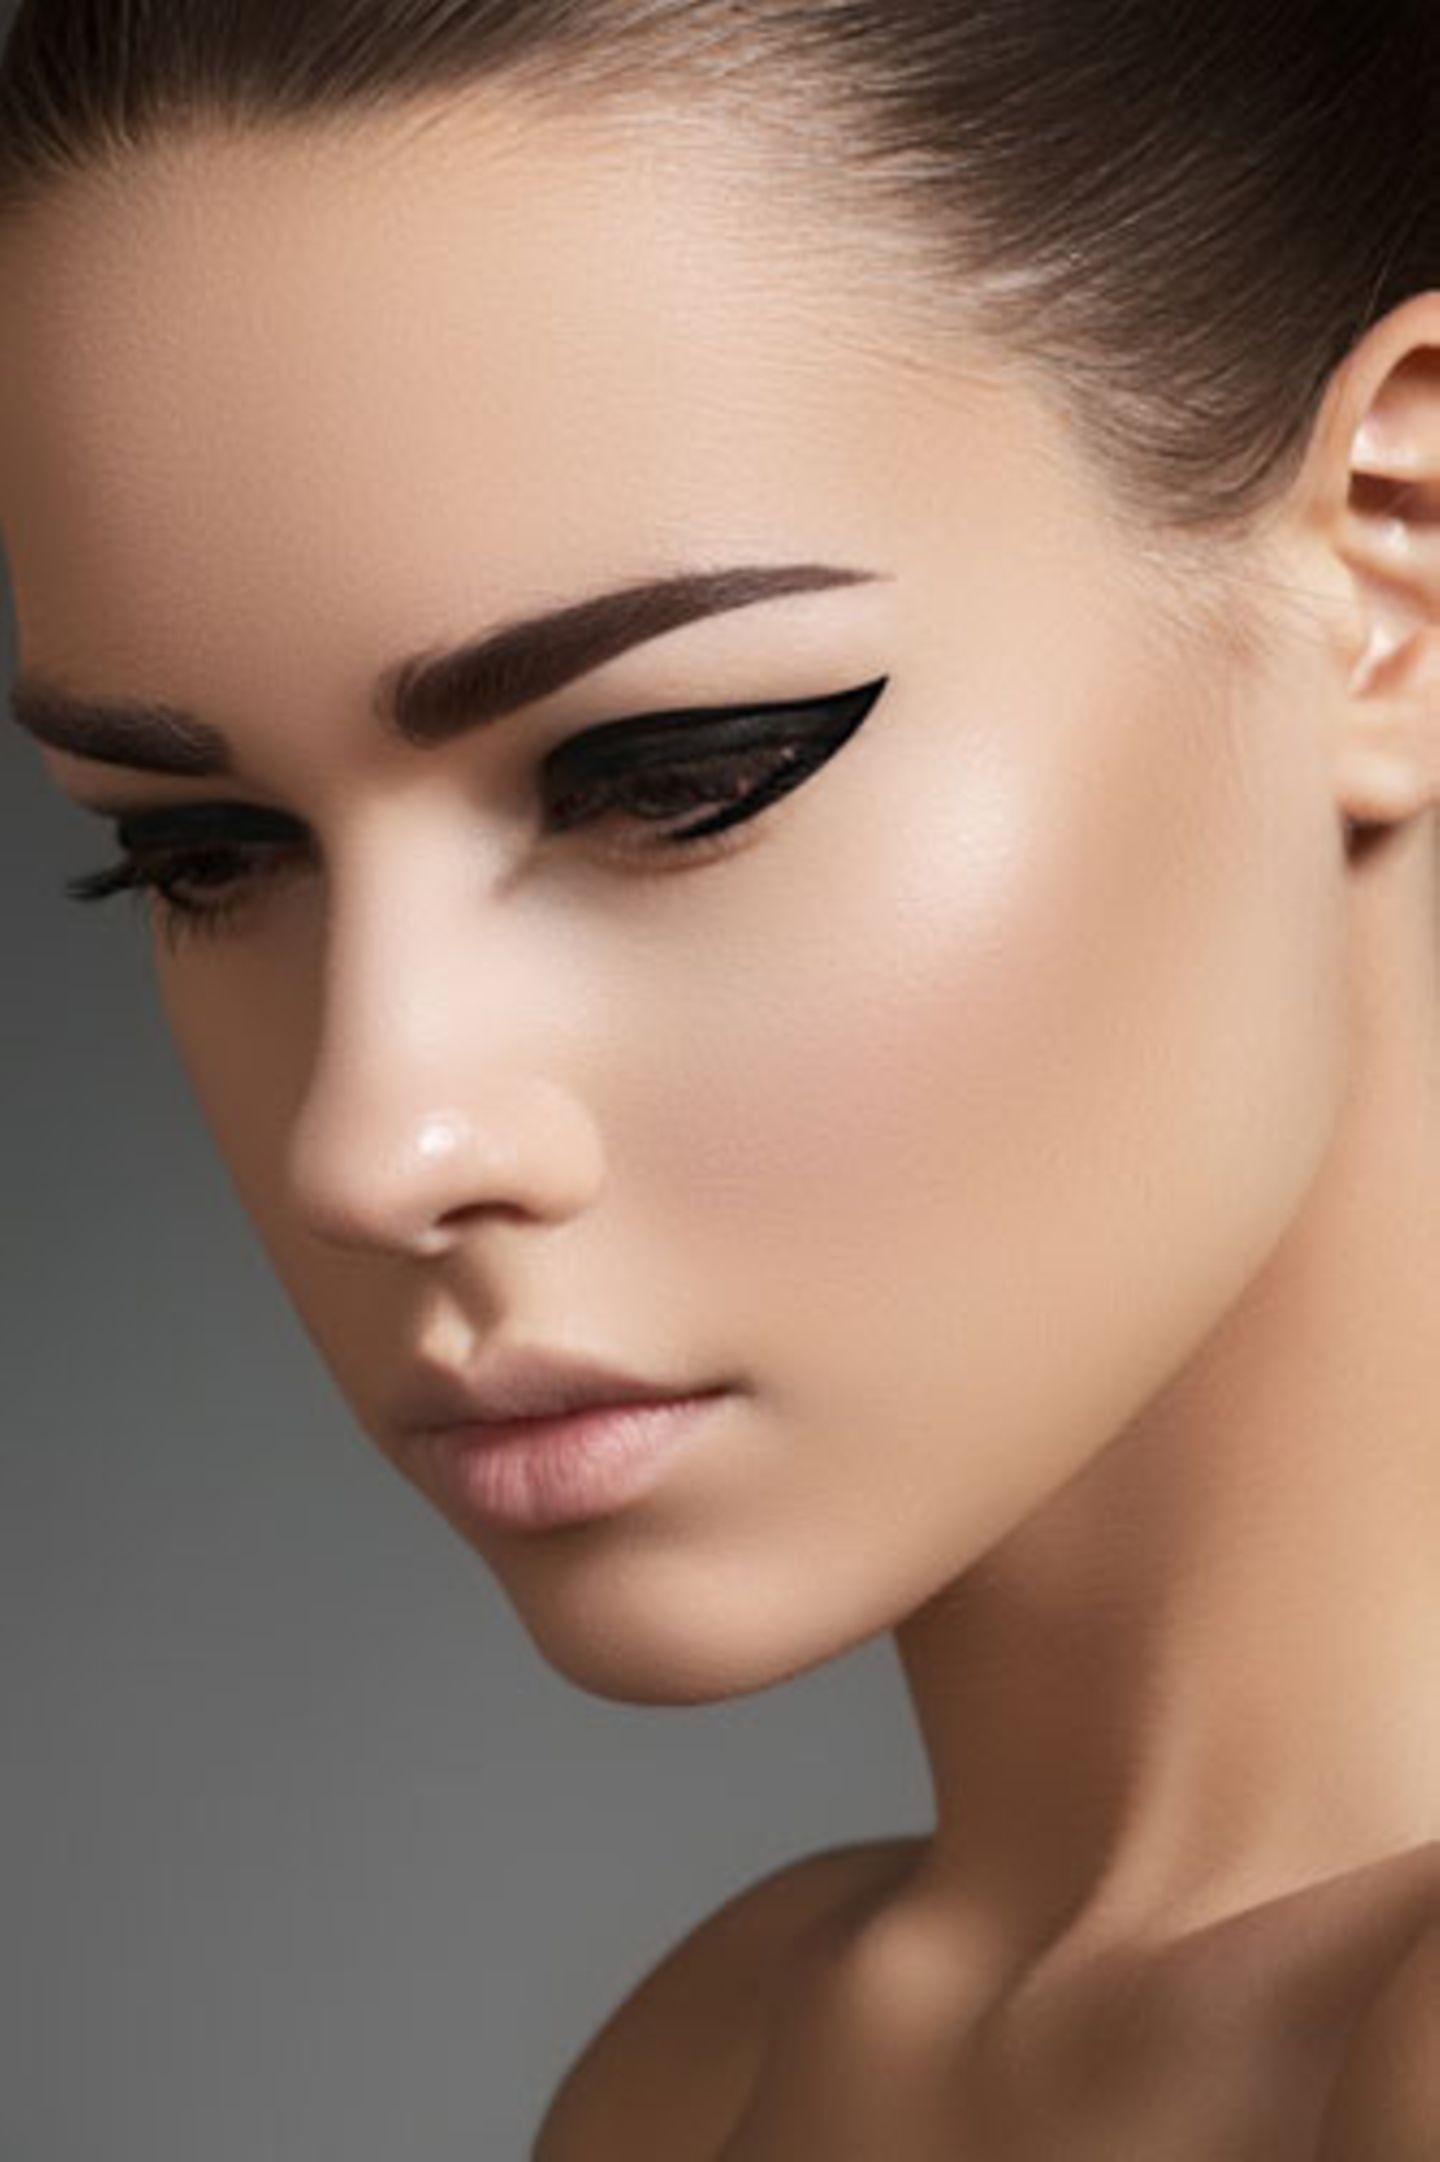 30. Make-up lässt die Haut älter aussehen- stimmt das?